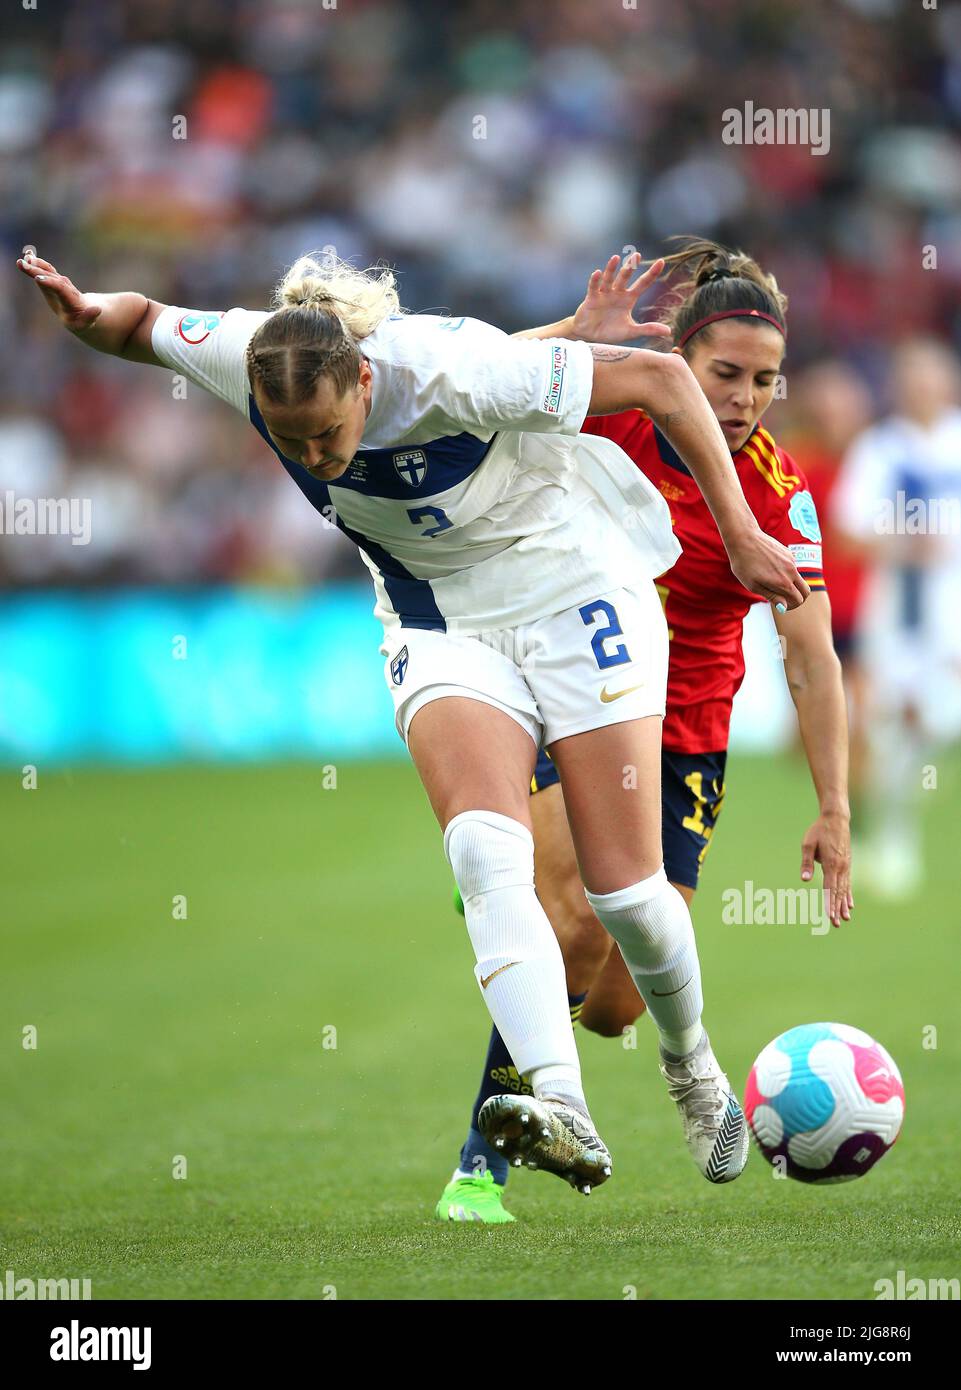 Die Finnin Elli Pikkujamsa (links) und die spanische Marta Cardona kämpfen während des UEFA Women's Euro 2022 Gruppe B-Spiels im Stadium MK, Milton Keynes, um den Ball. Bilddatum: Freitag, 8. Juli 2022. Stockfoto